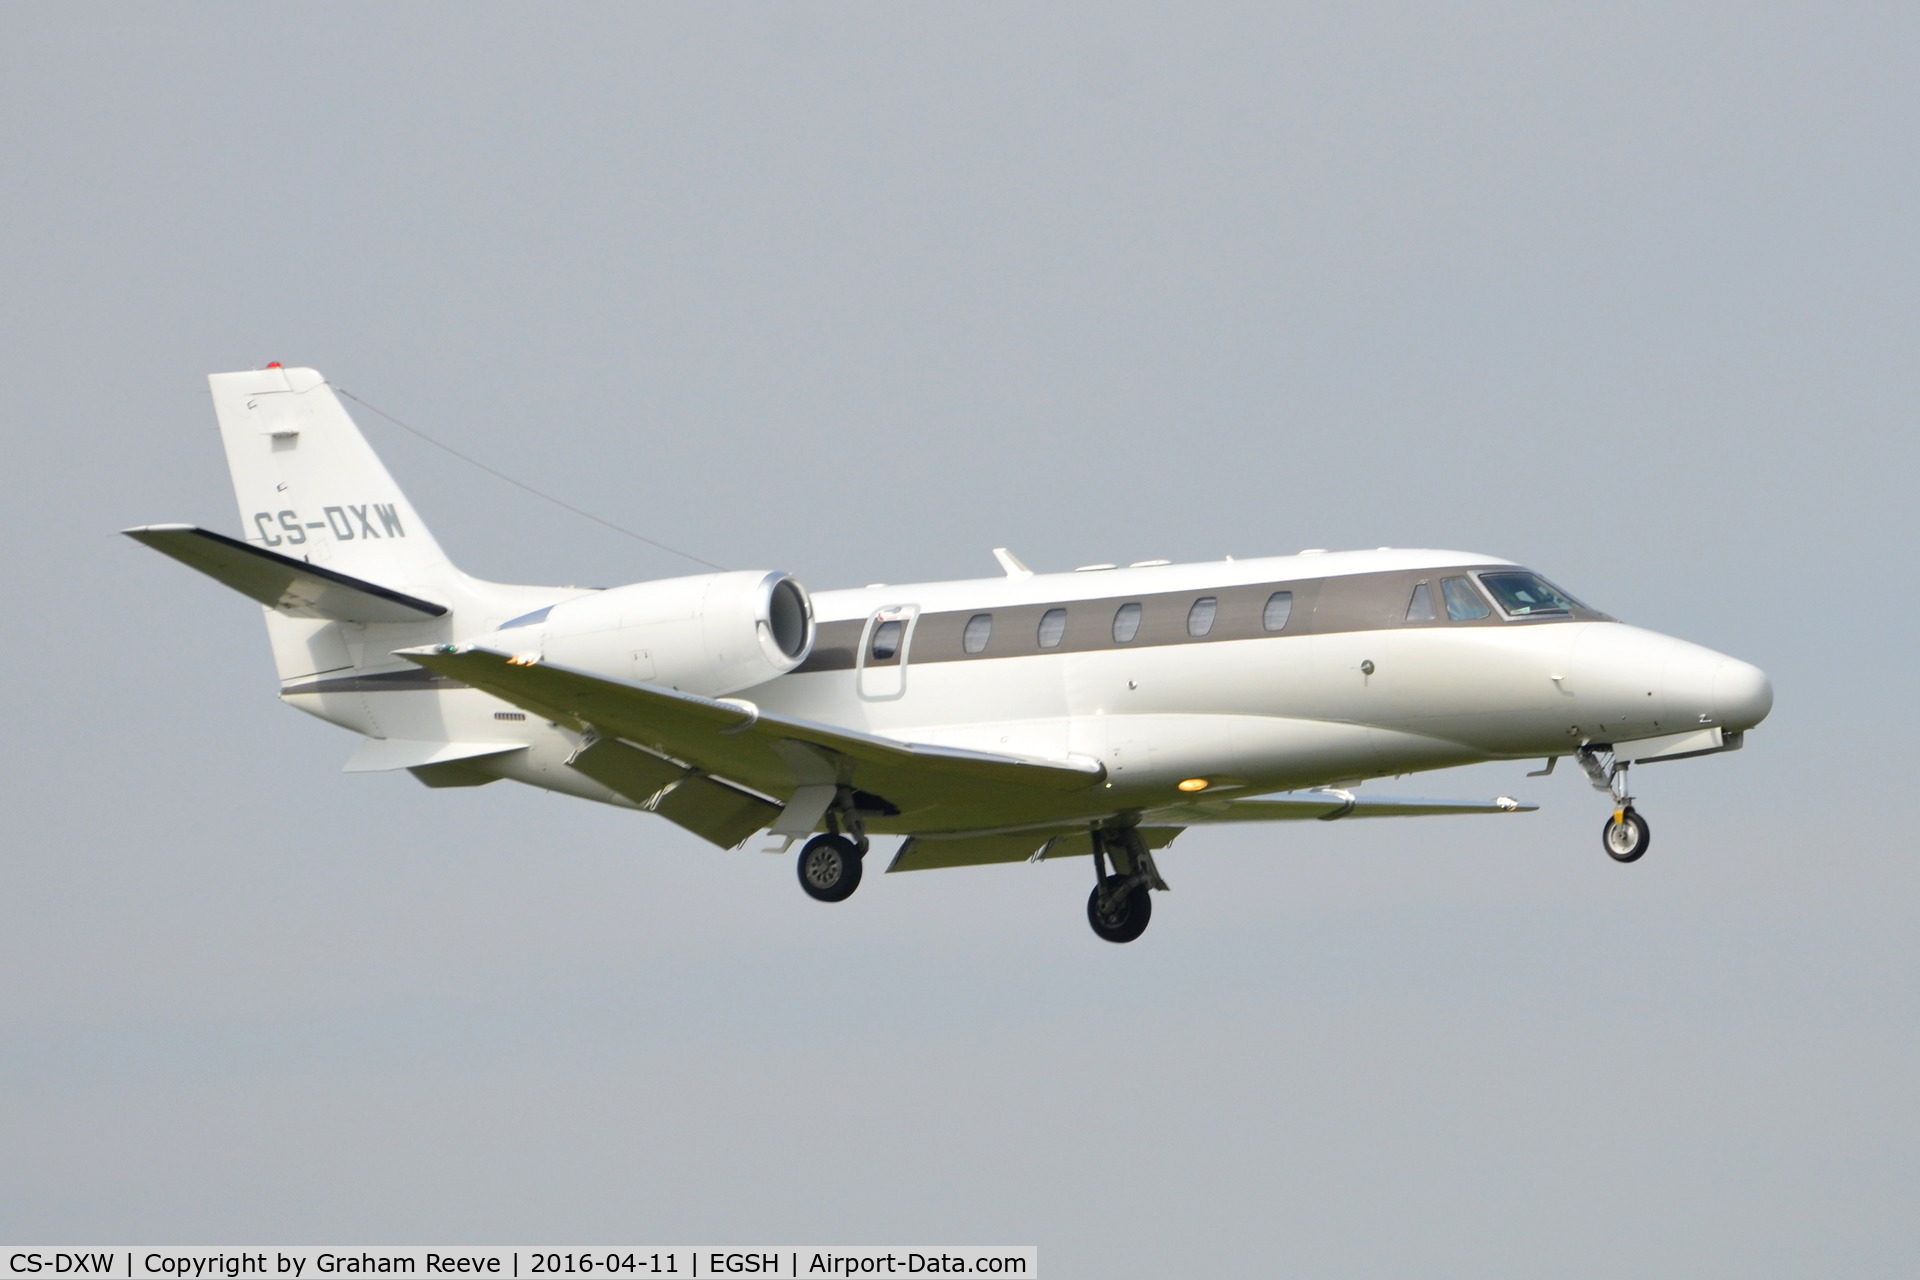 CS-DXW, 2008 Cessna 560 Citation Excel XLS C/N 560-5787, Landing at Norwich.